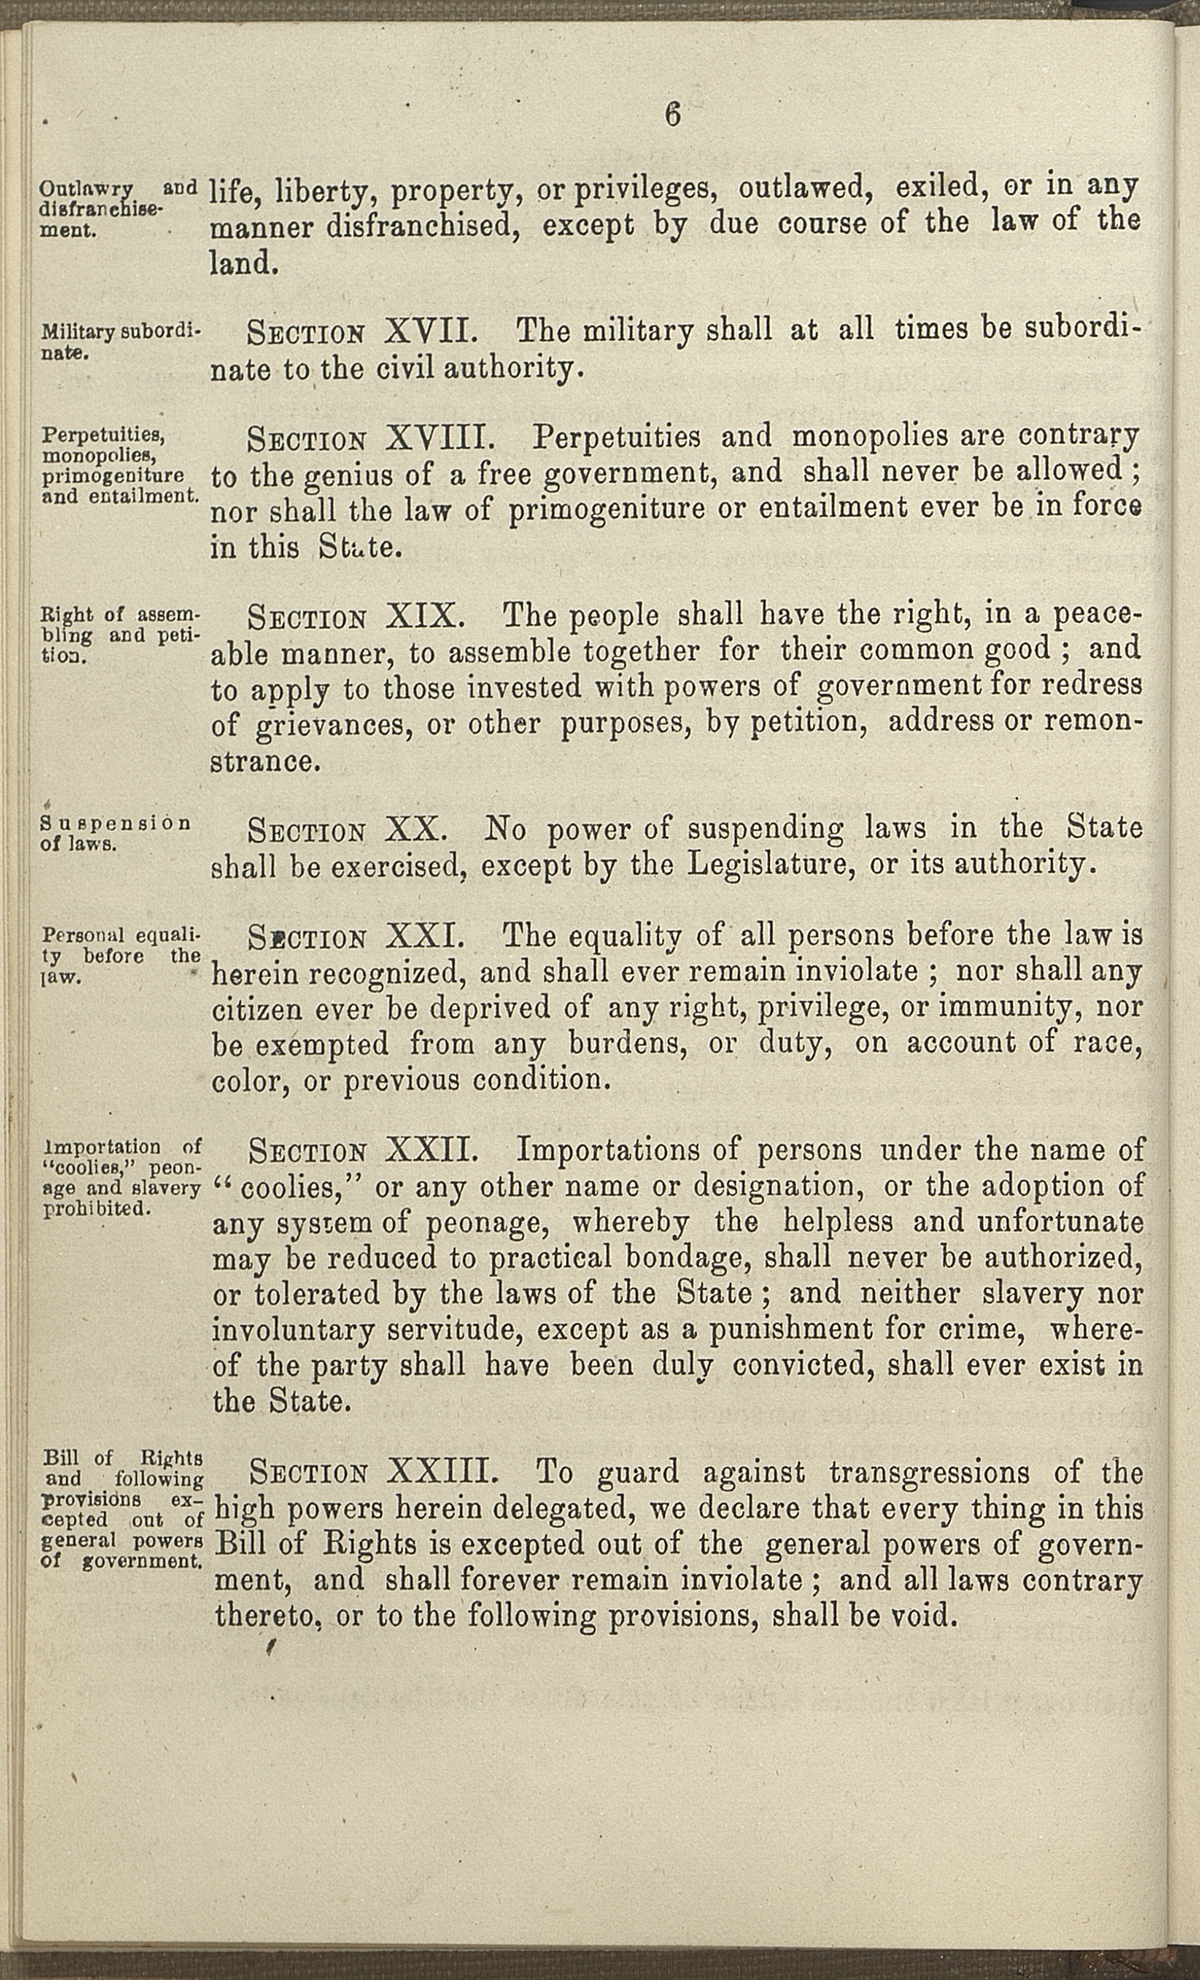 Article I, Sections XVI-XXIII